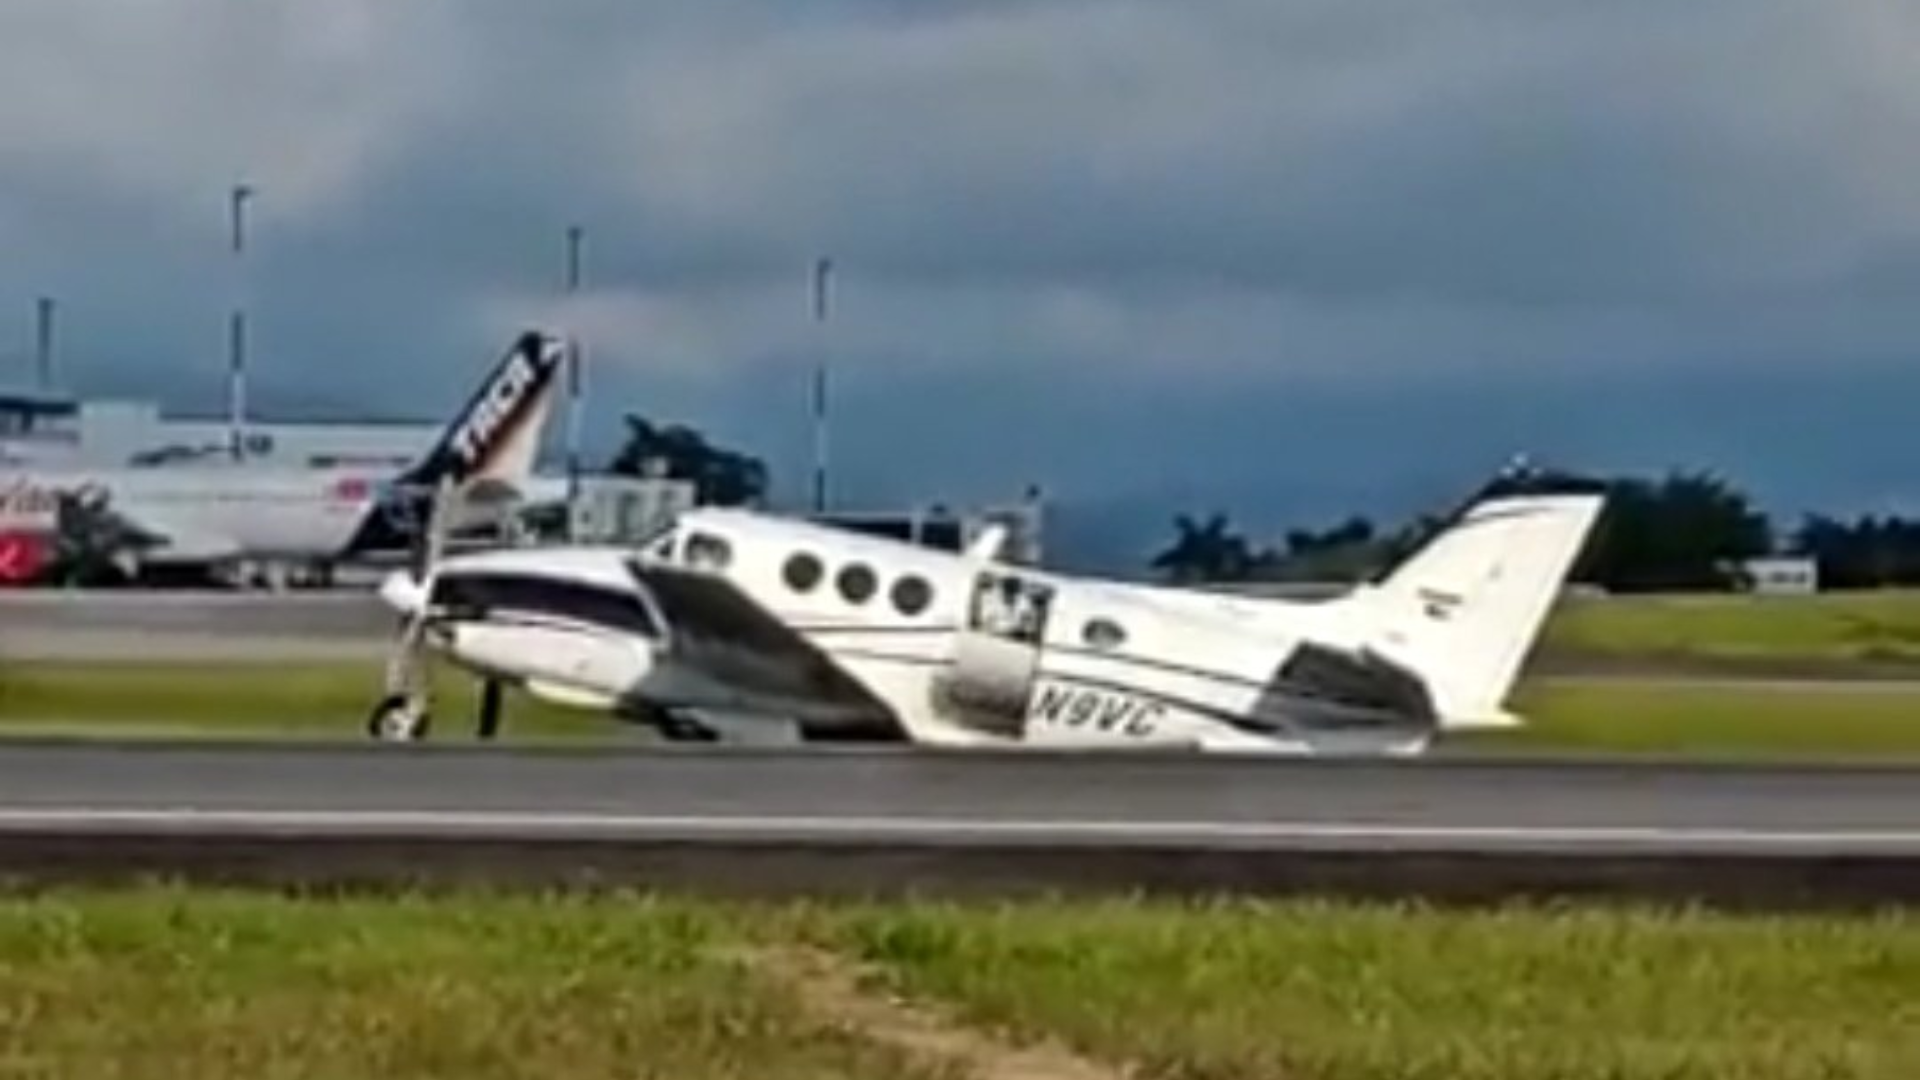 Cierran el Aeropuerto de Palonegro en Bucaramanga por accidente de avioneta. @oscarghernandez/Twitter